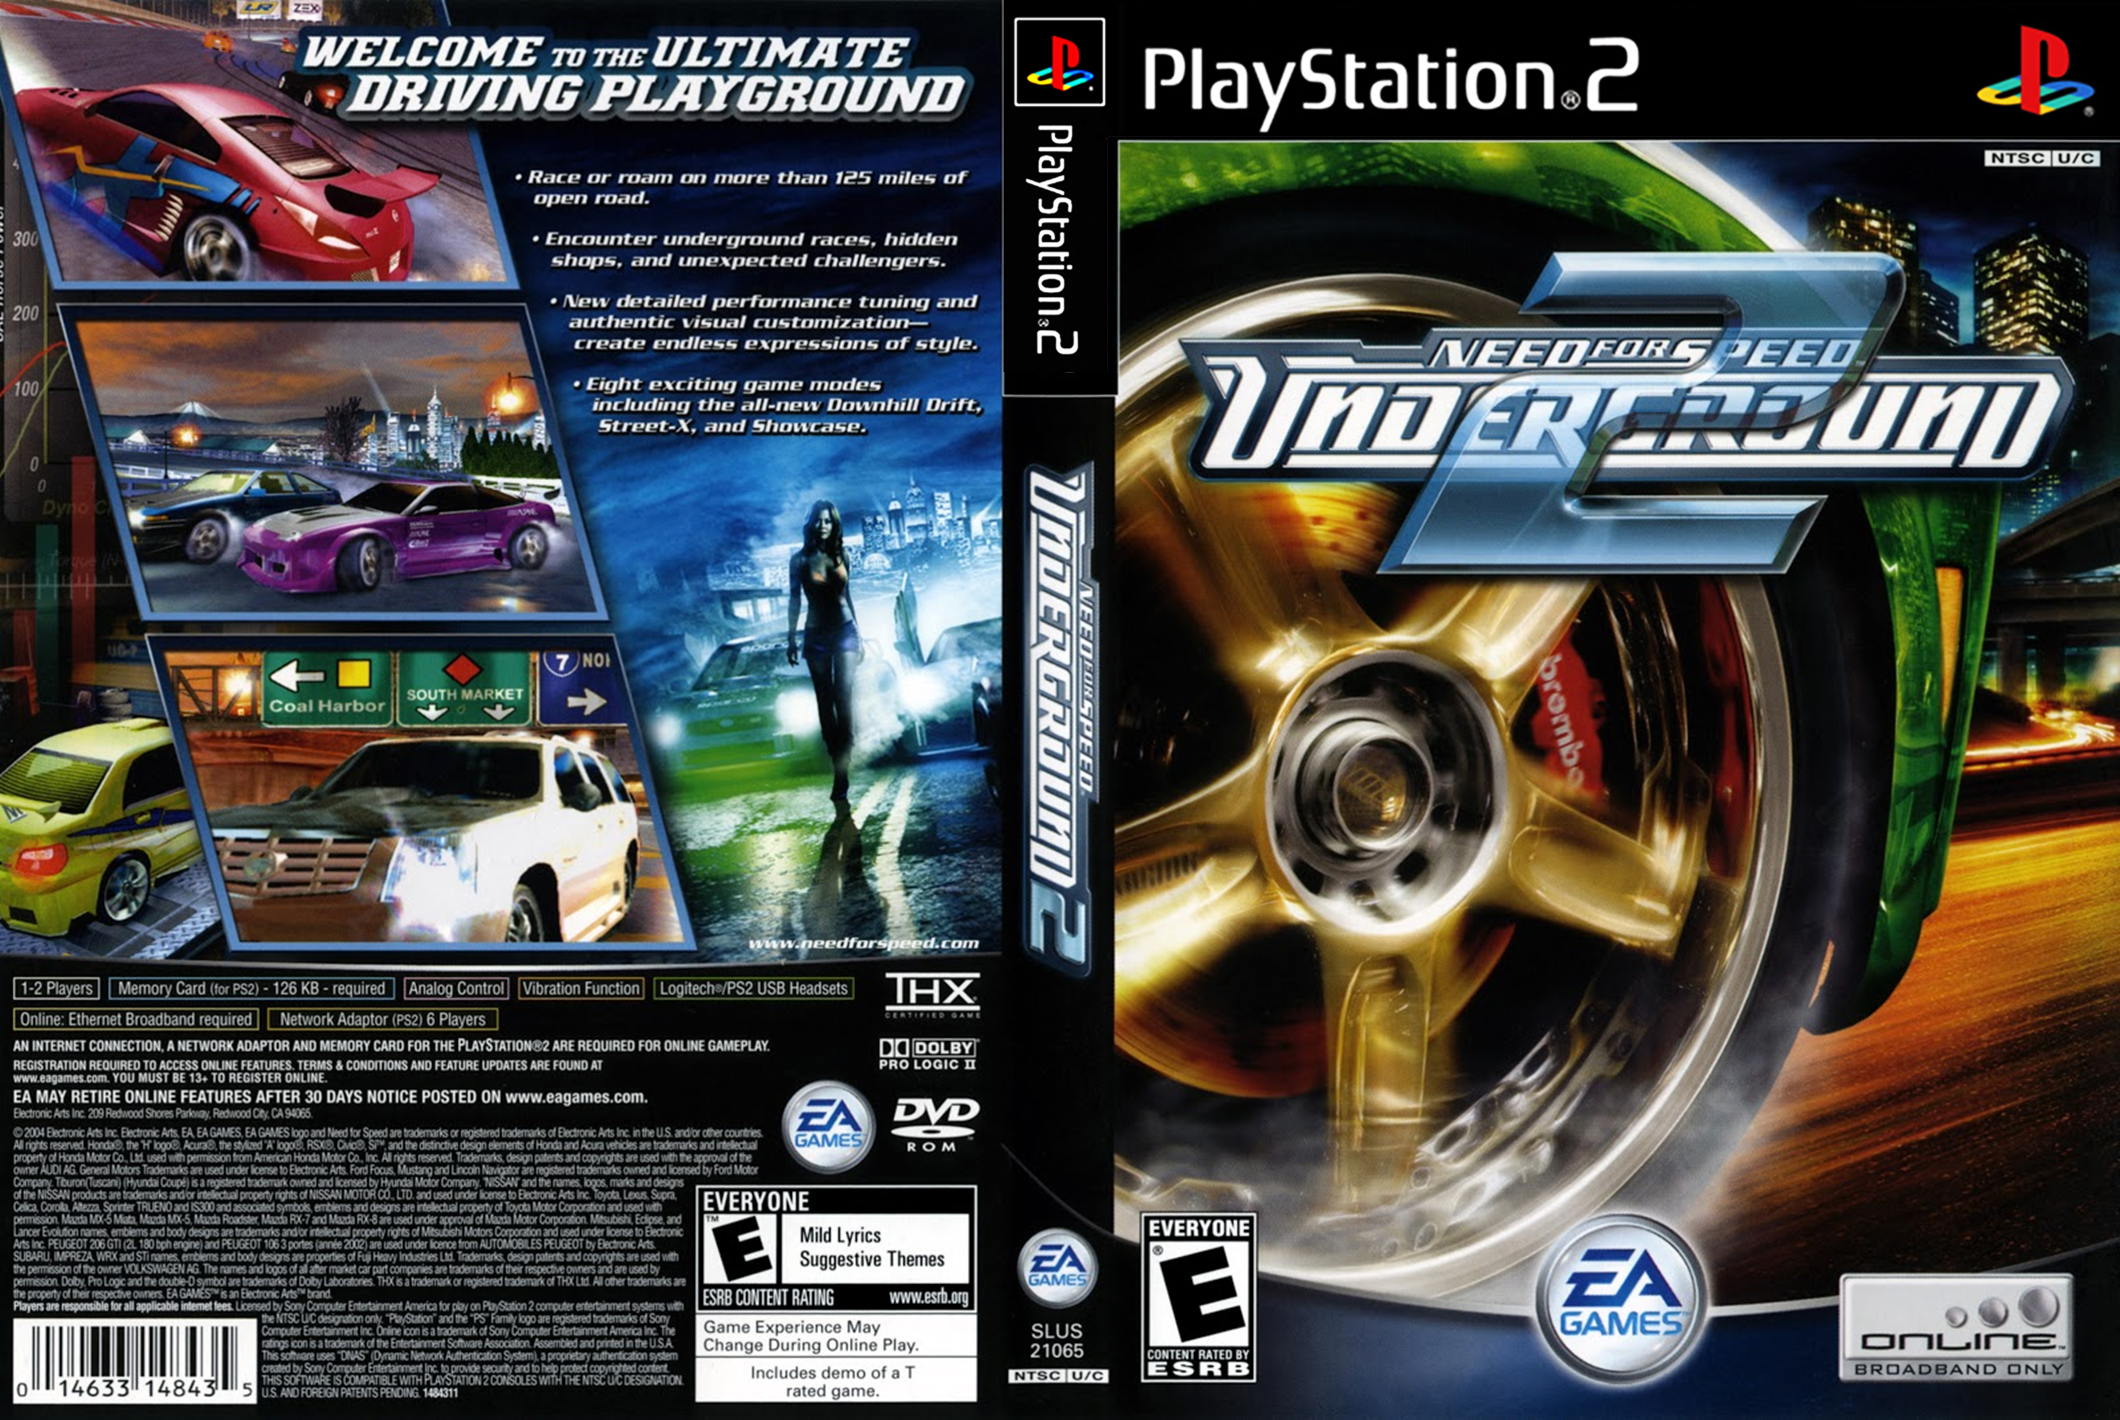 Revivendo a Nostalgia Do PS2: Grand Theft Auto IV PT-BR DVD ISO RIPADO PS2